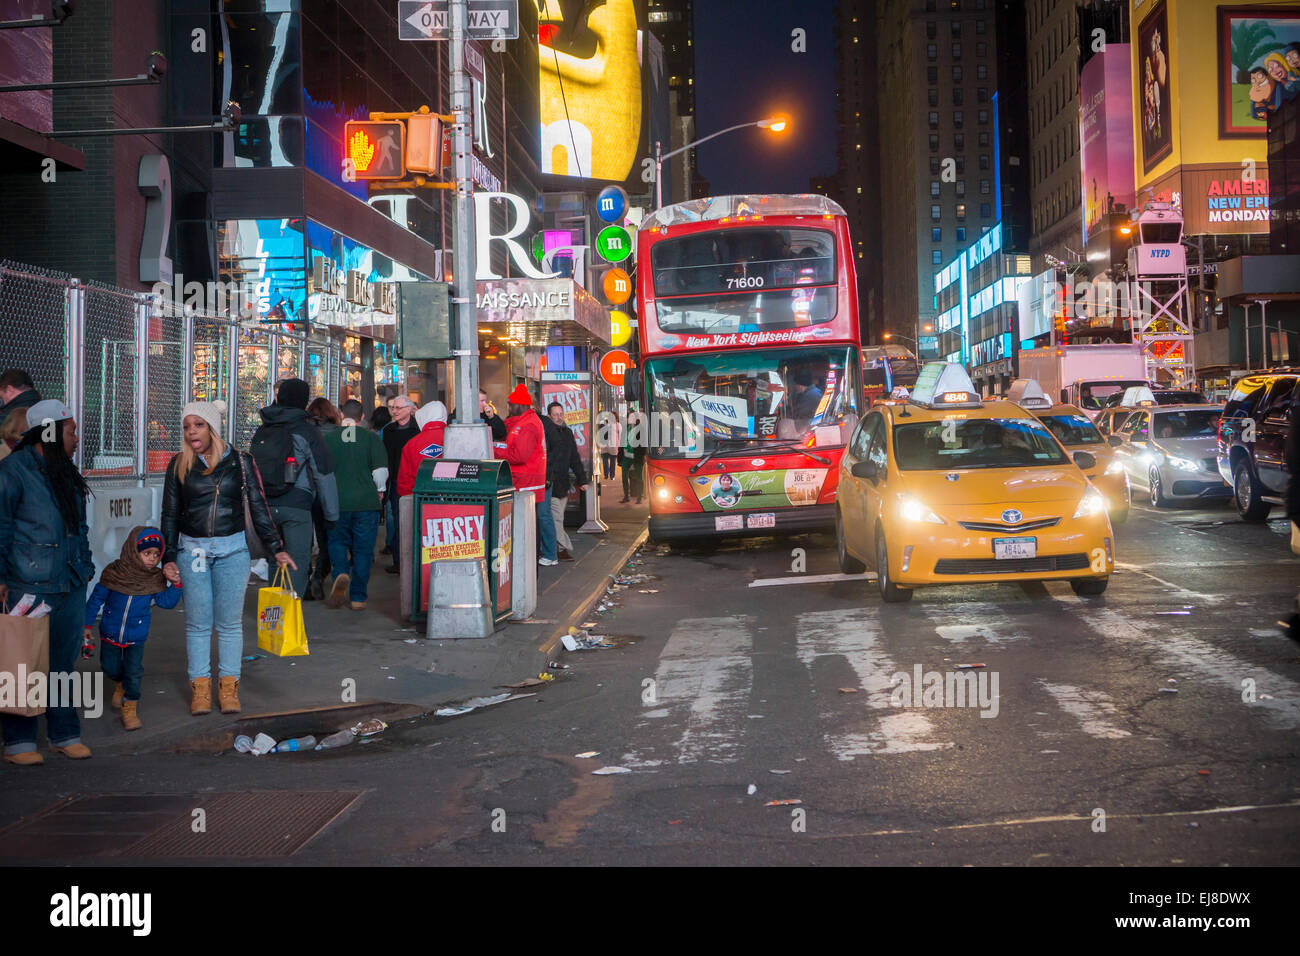 Une visite guidée de New York en bus de Times Square à New York le Mardi, Mars 17, 2015. (© Richard n. Levine) Banque D'Images